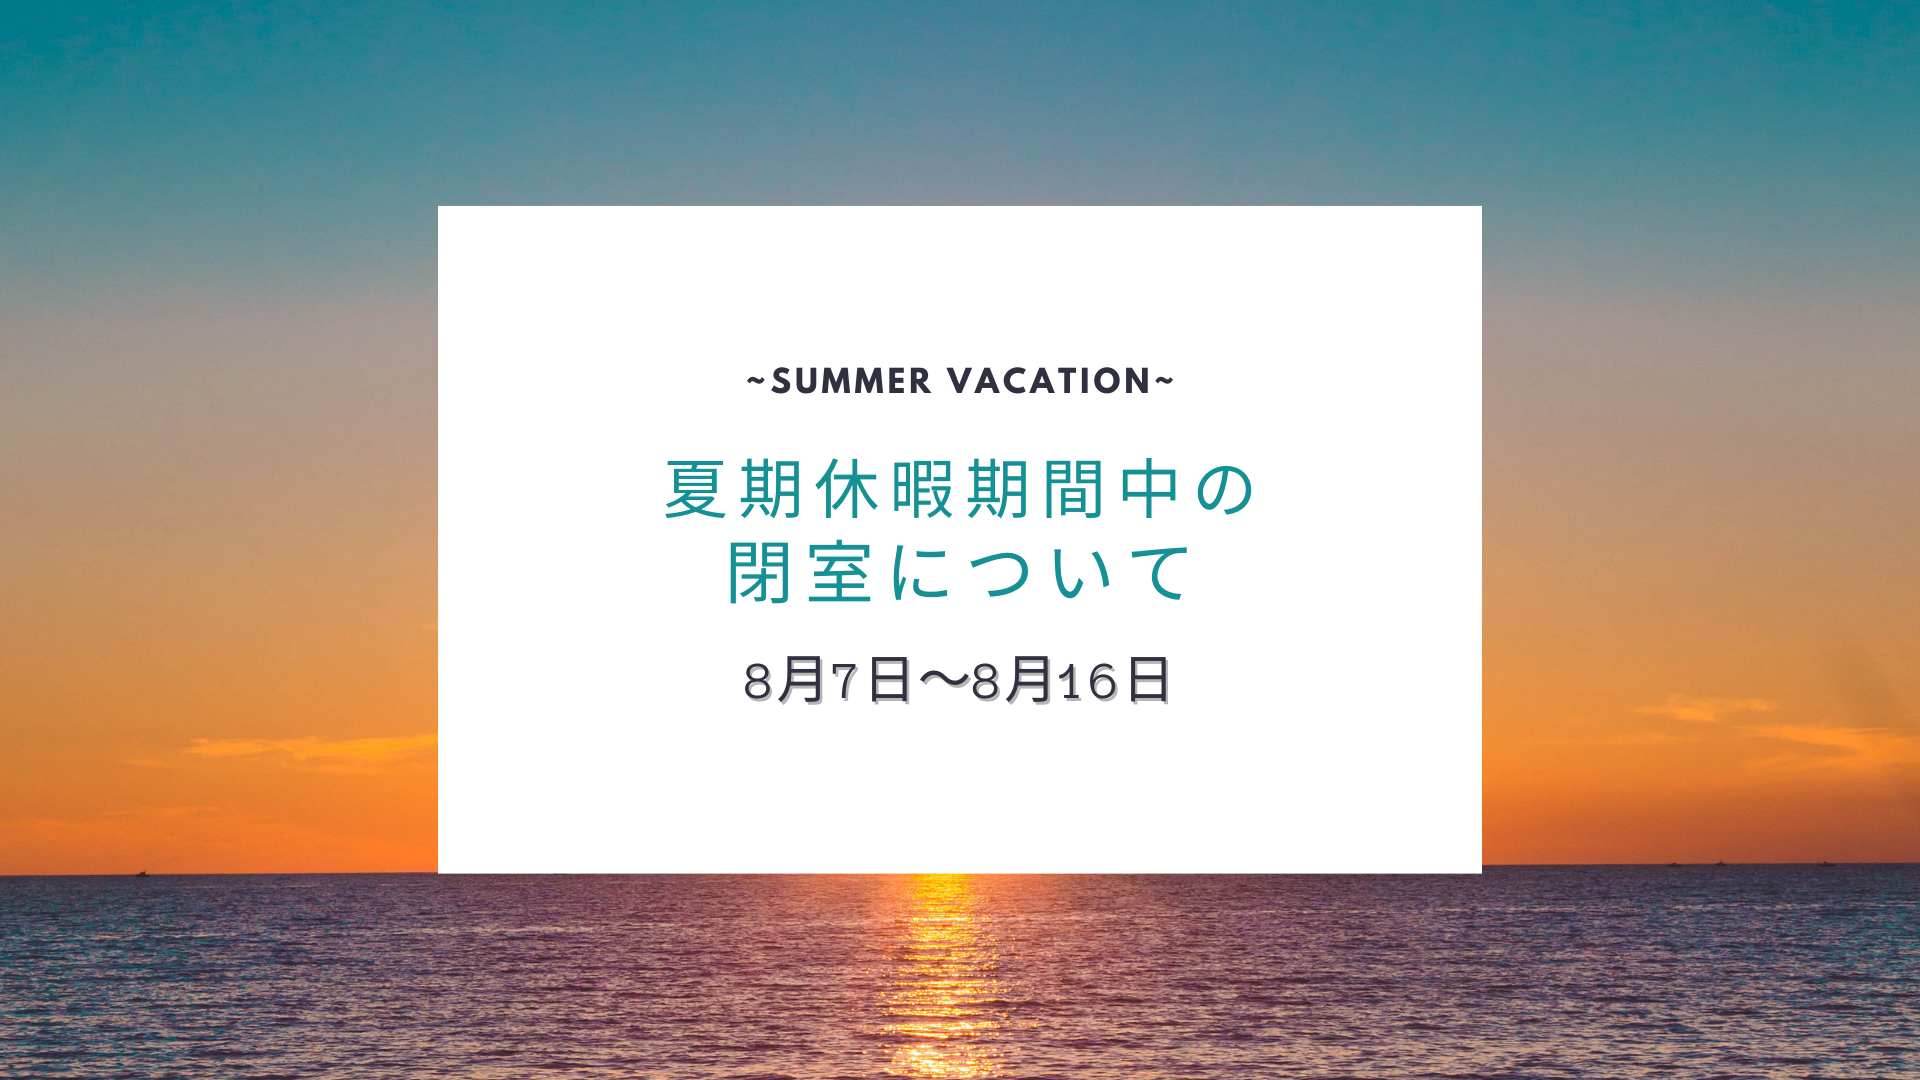 【お知らせ】夏期休暇期間中の閉室について